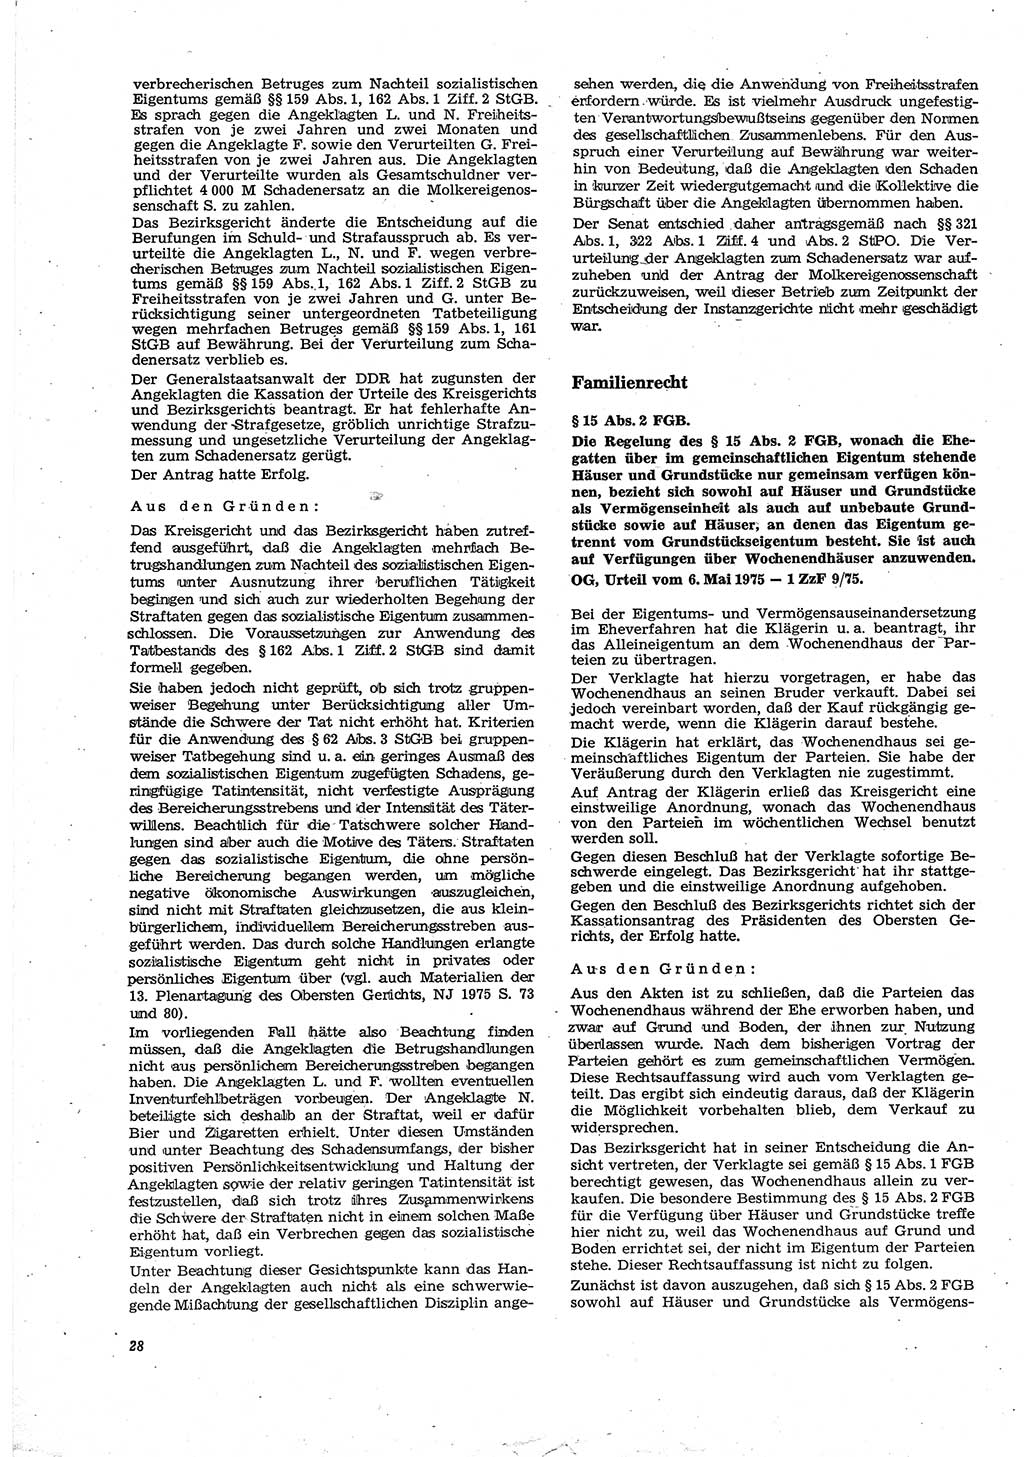 Neue Justiz (NJ), Zeitschrift für Recht und Rechtswissenschaft [Deutsche Demokratische Republik (DDR)], 30. Jahrgang 1976, Seite 28 (NJ DDR 1976, S. 28)